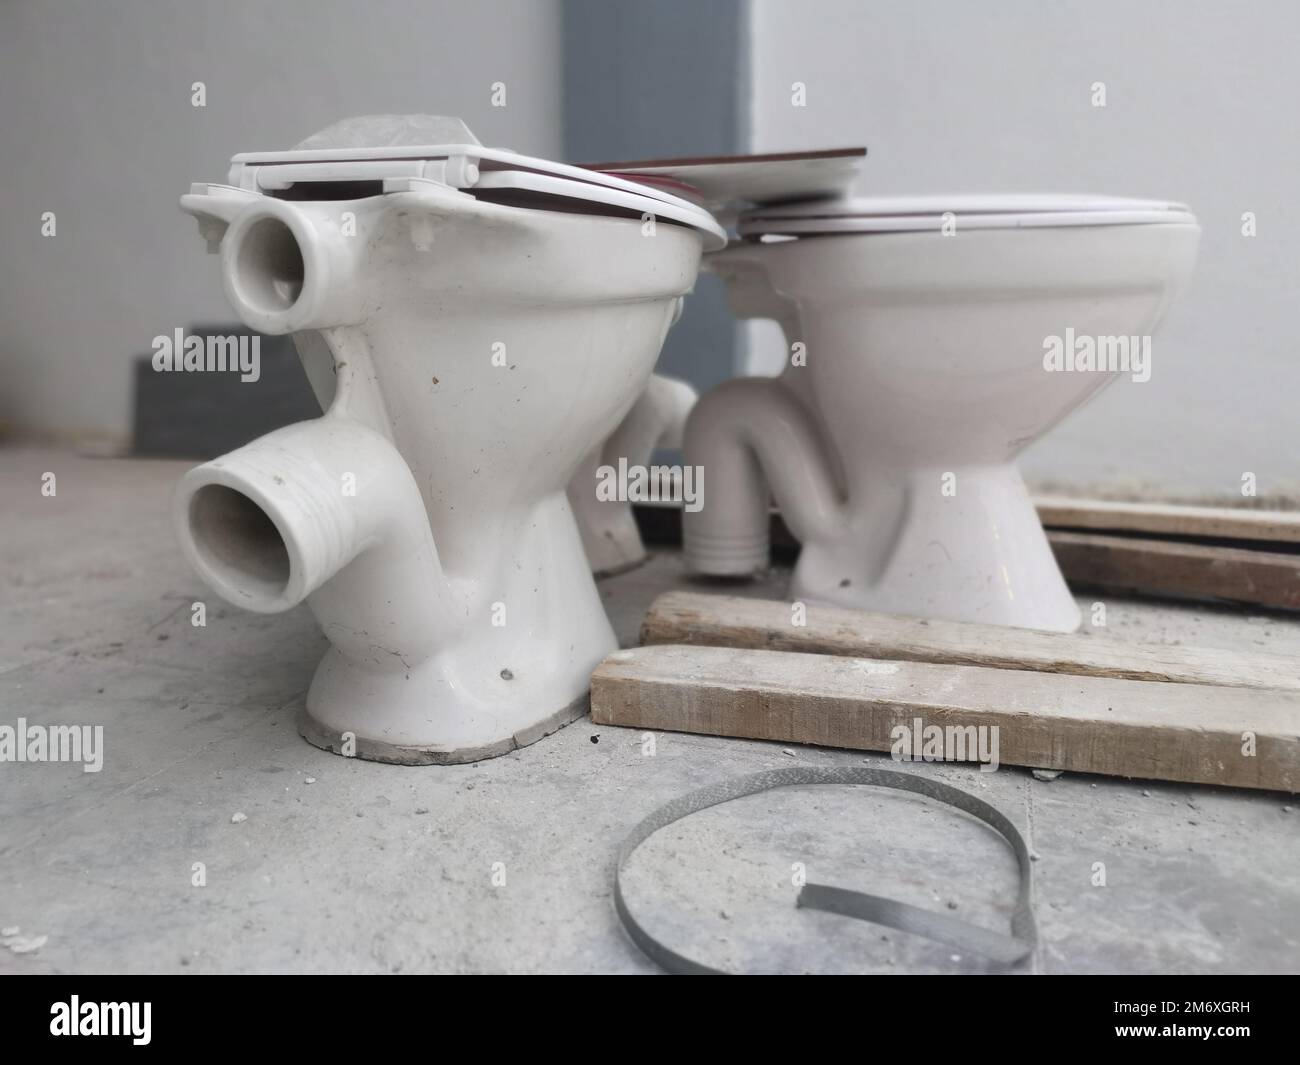 white ceramic toilet seat with slid. Stock Photo